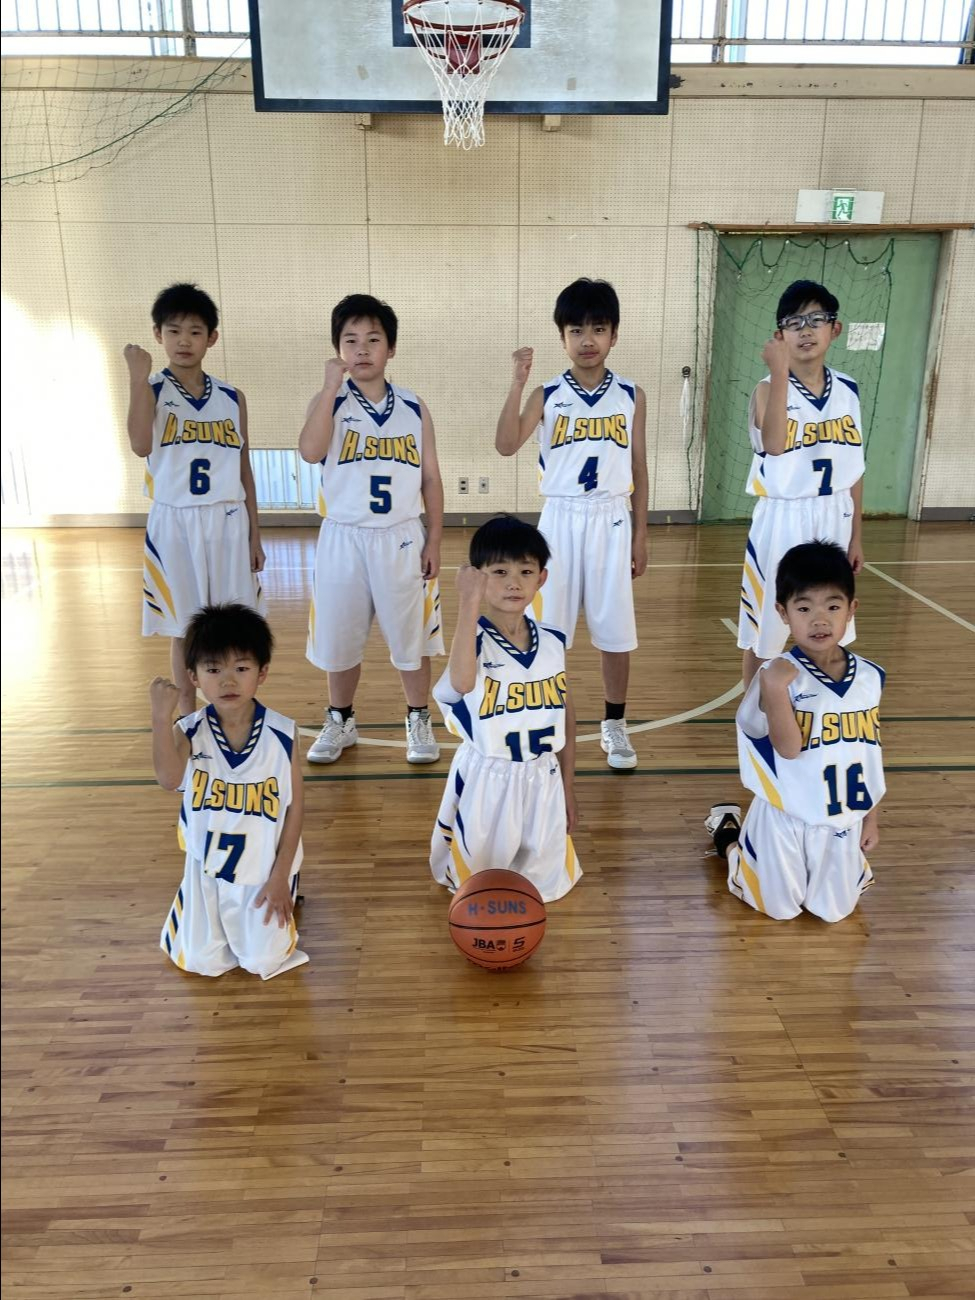 H.SUNSスポーツ少年団（ミニバスケットボール） | 常陸太田市公式